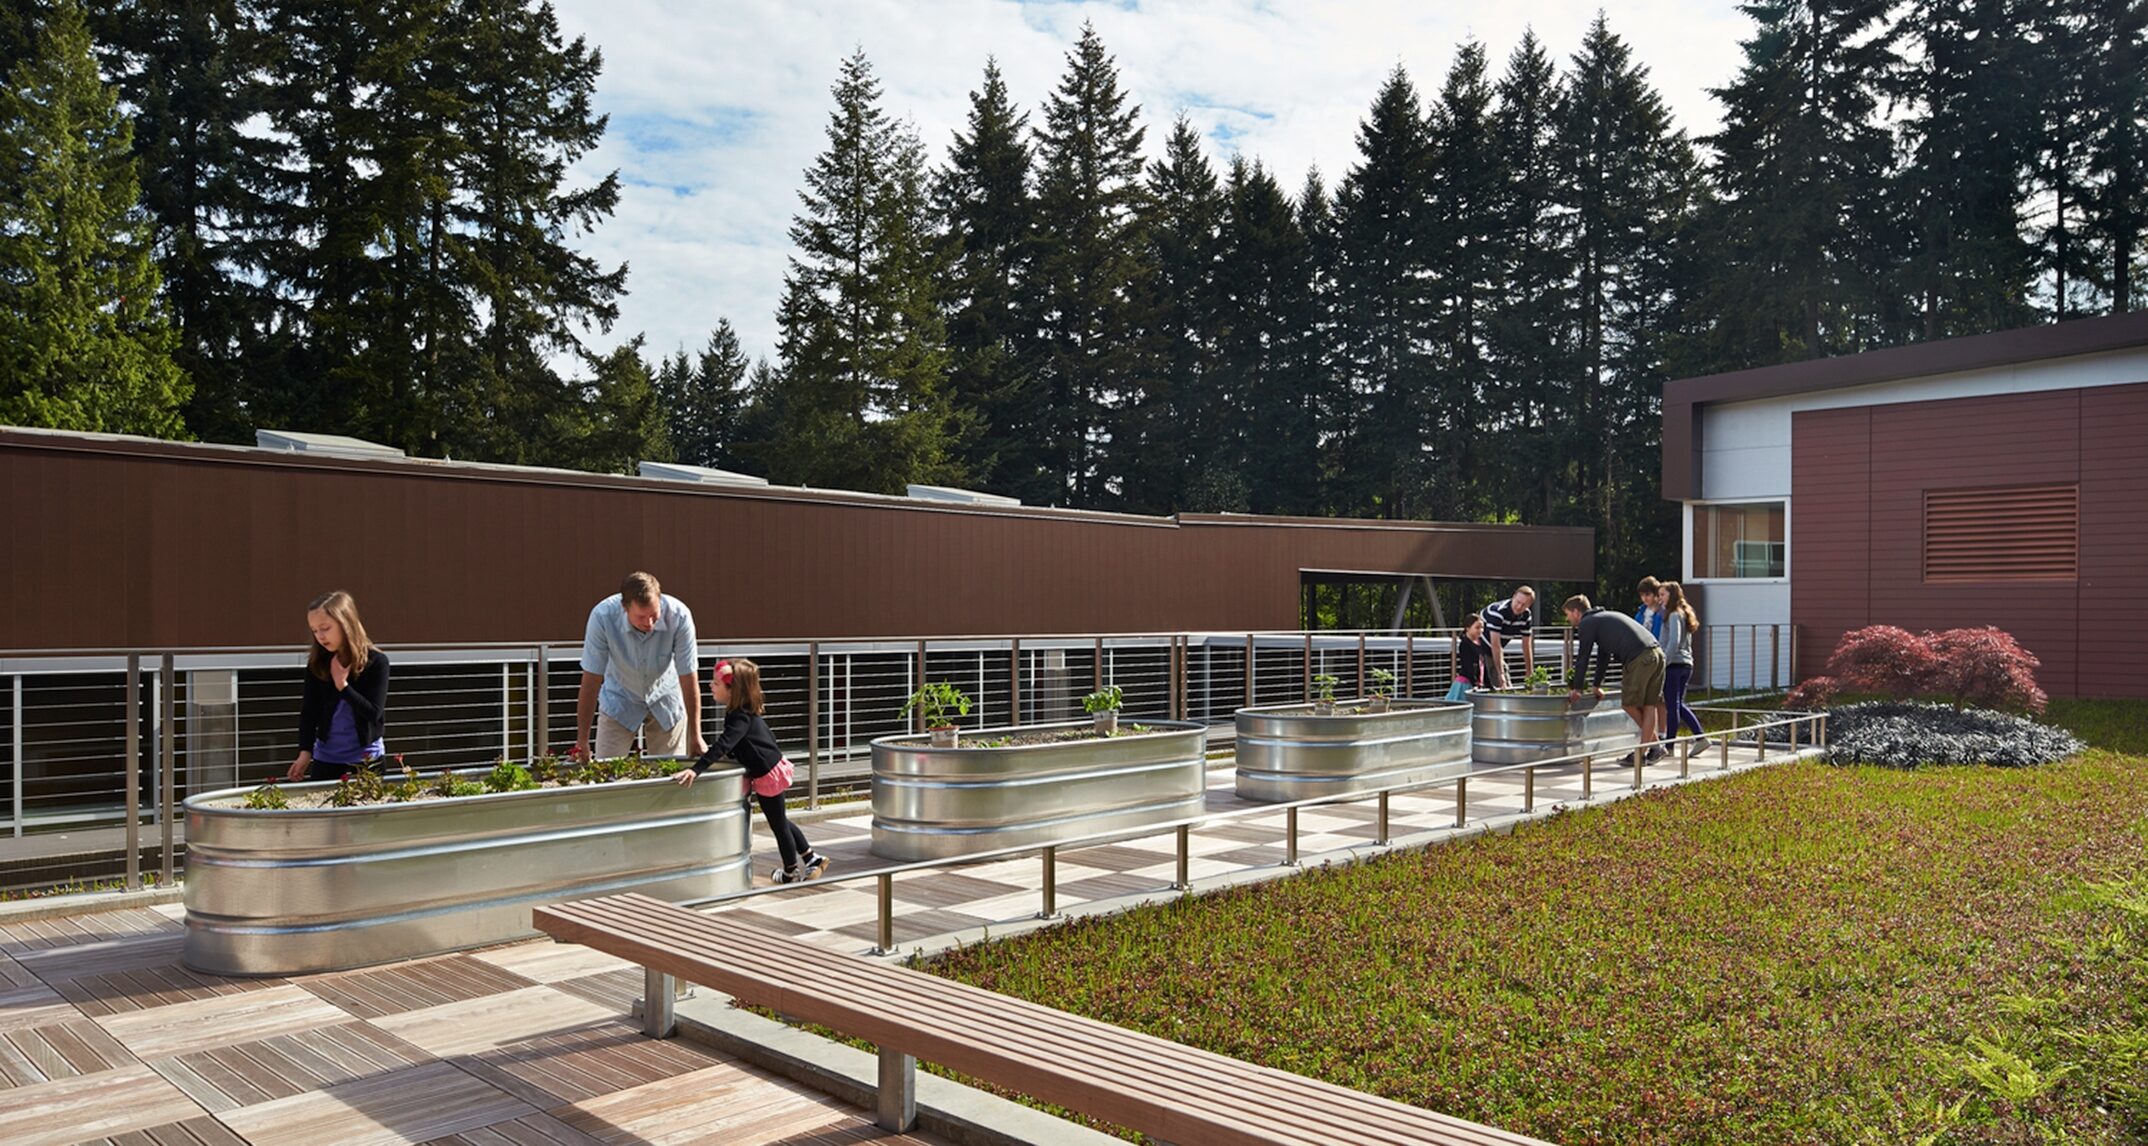 Cherry Crest Elementary School, Bellevue, Washington - NAC
Architecture 